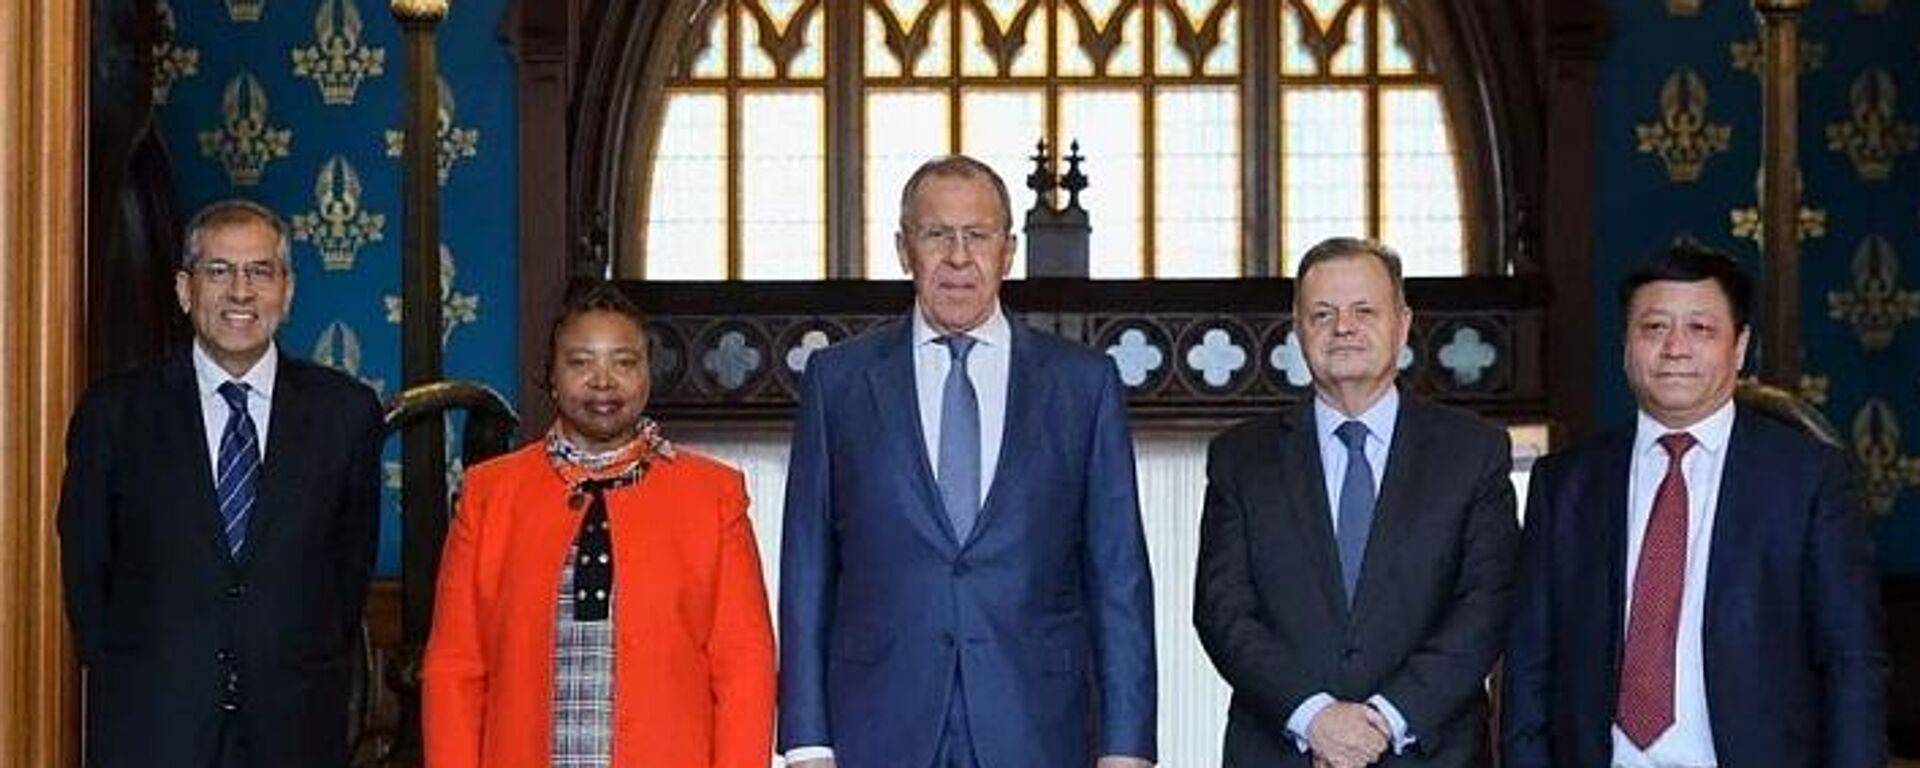 Ngoại trưởng Nga Sergei Lavrov trong cuộc gặp với những người đứng đầu cơ quan đại diện ngoại giao của các nước BRICS được công nhận tại Moscow dưới hình thức bữa sáng làm việc - Sputnik Việt Nam, 1920, 11.04.2023